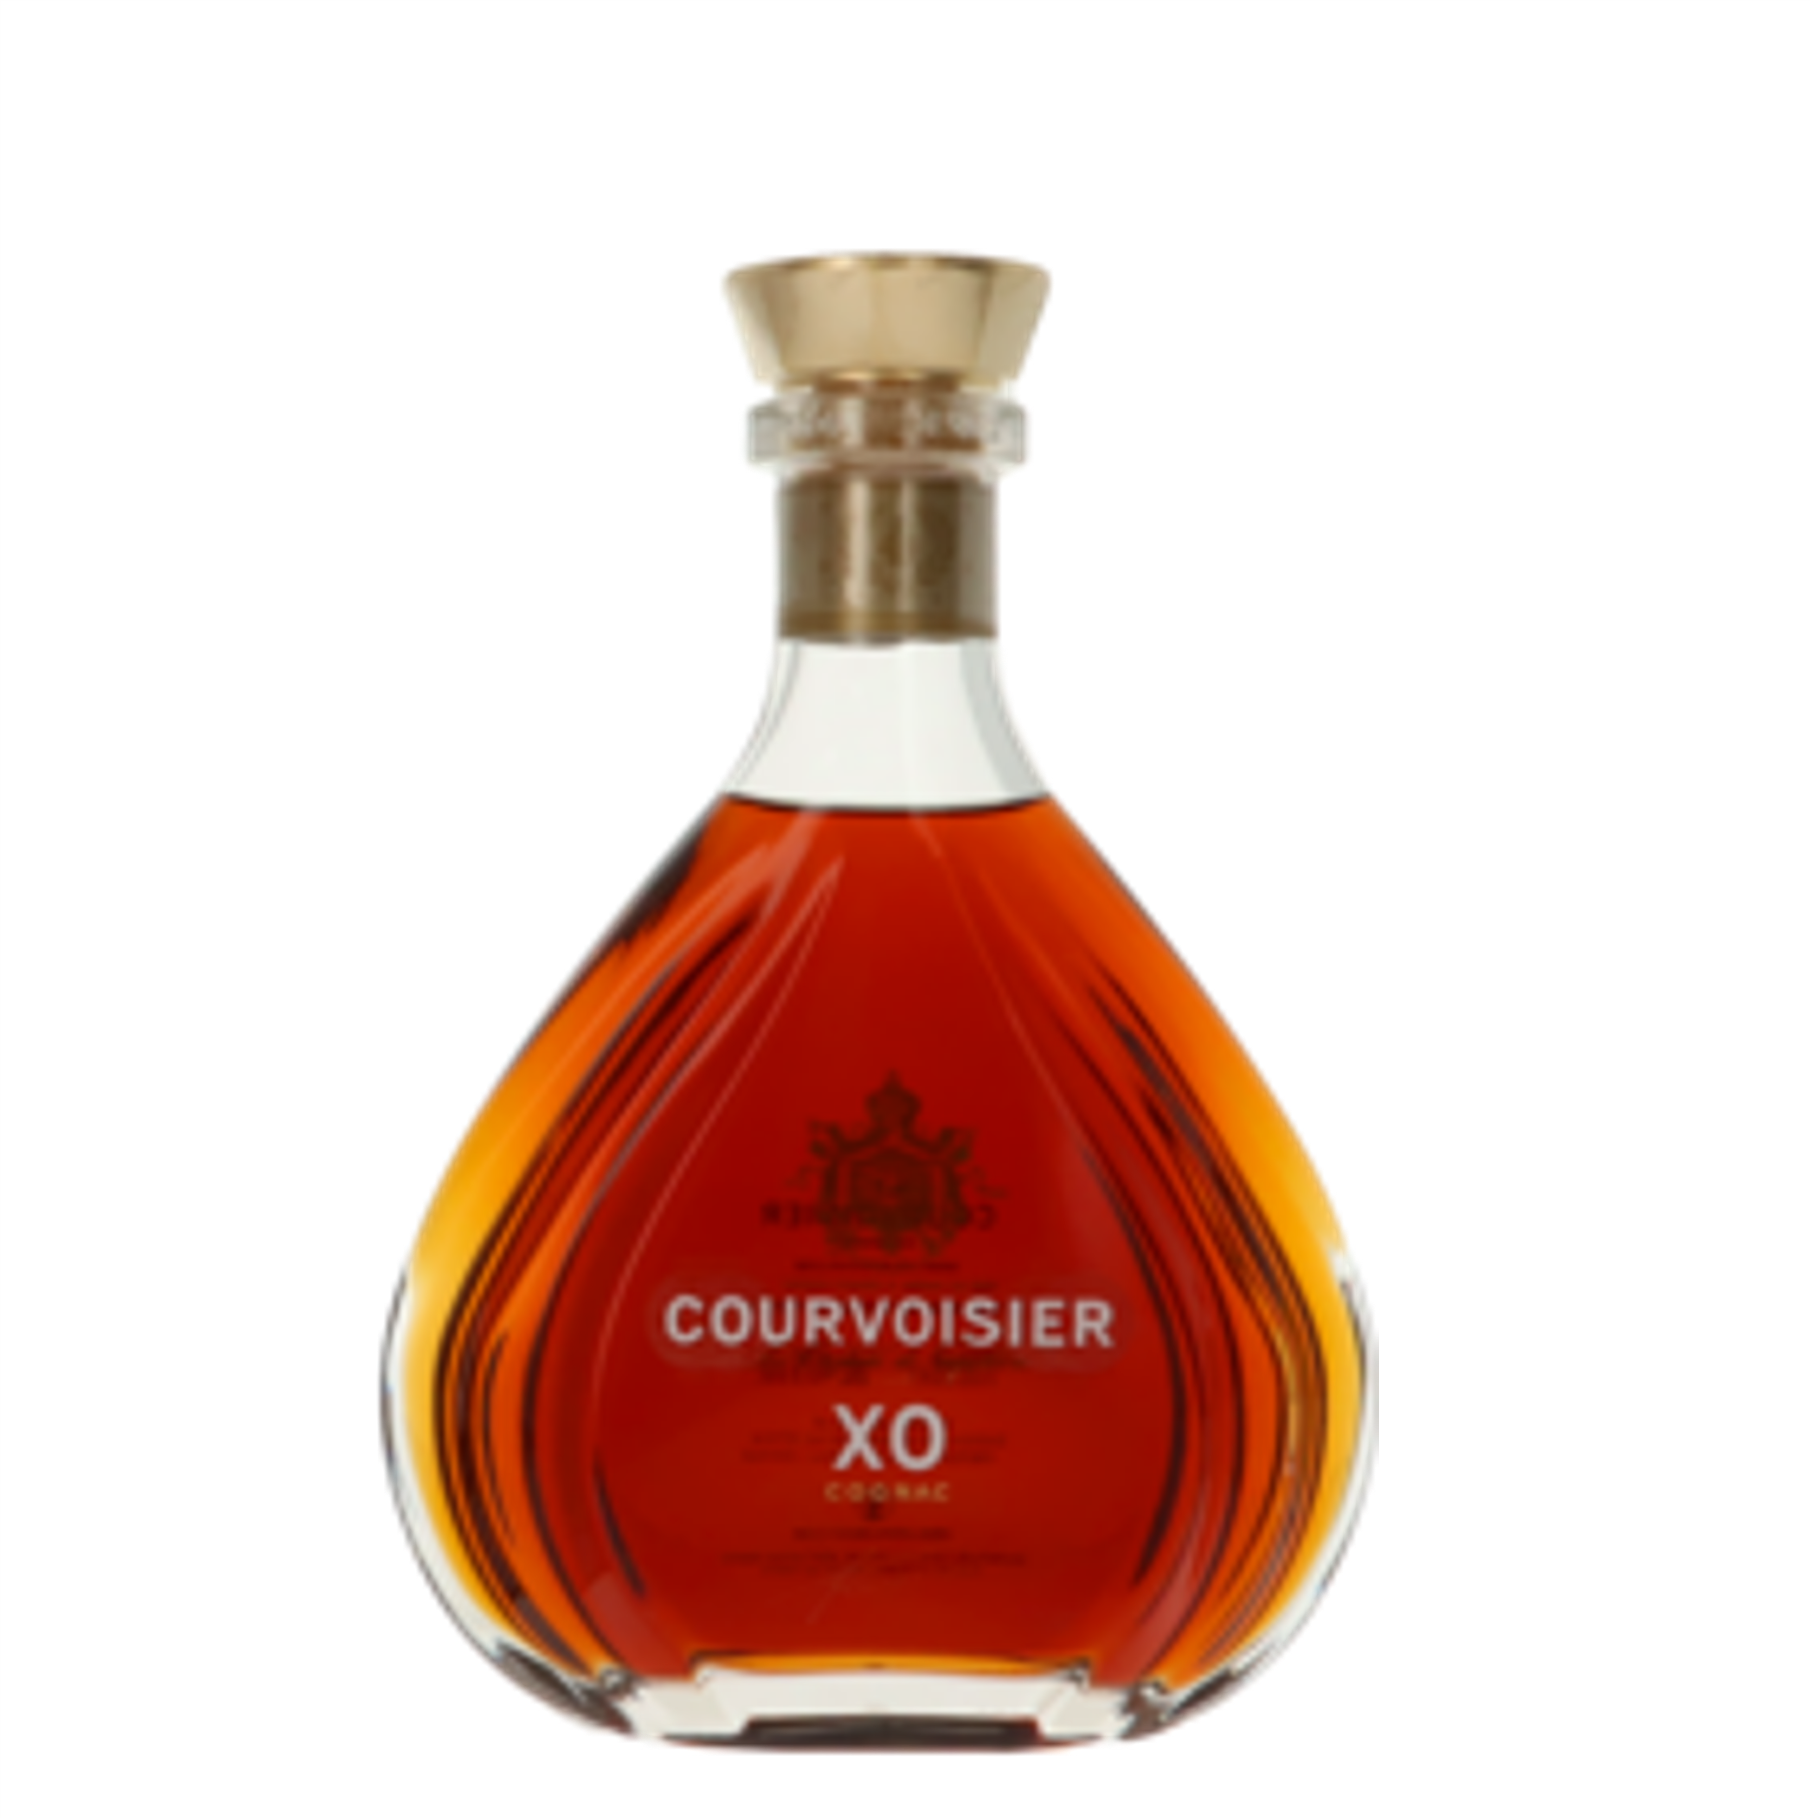 courvoisier xo discover cognac.jpg